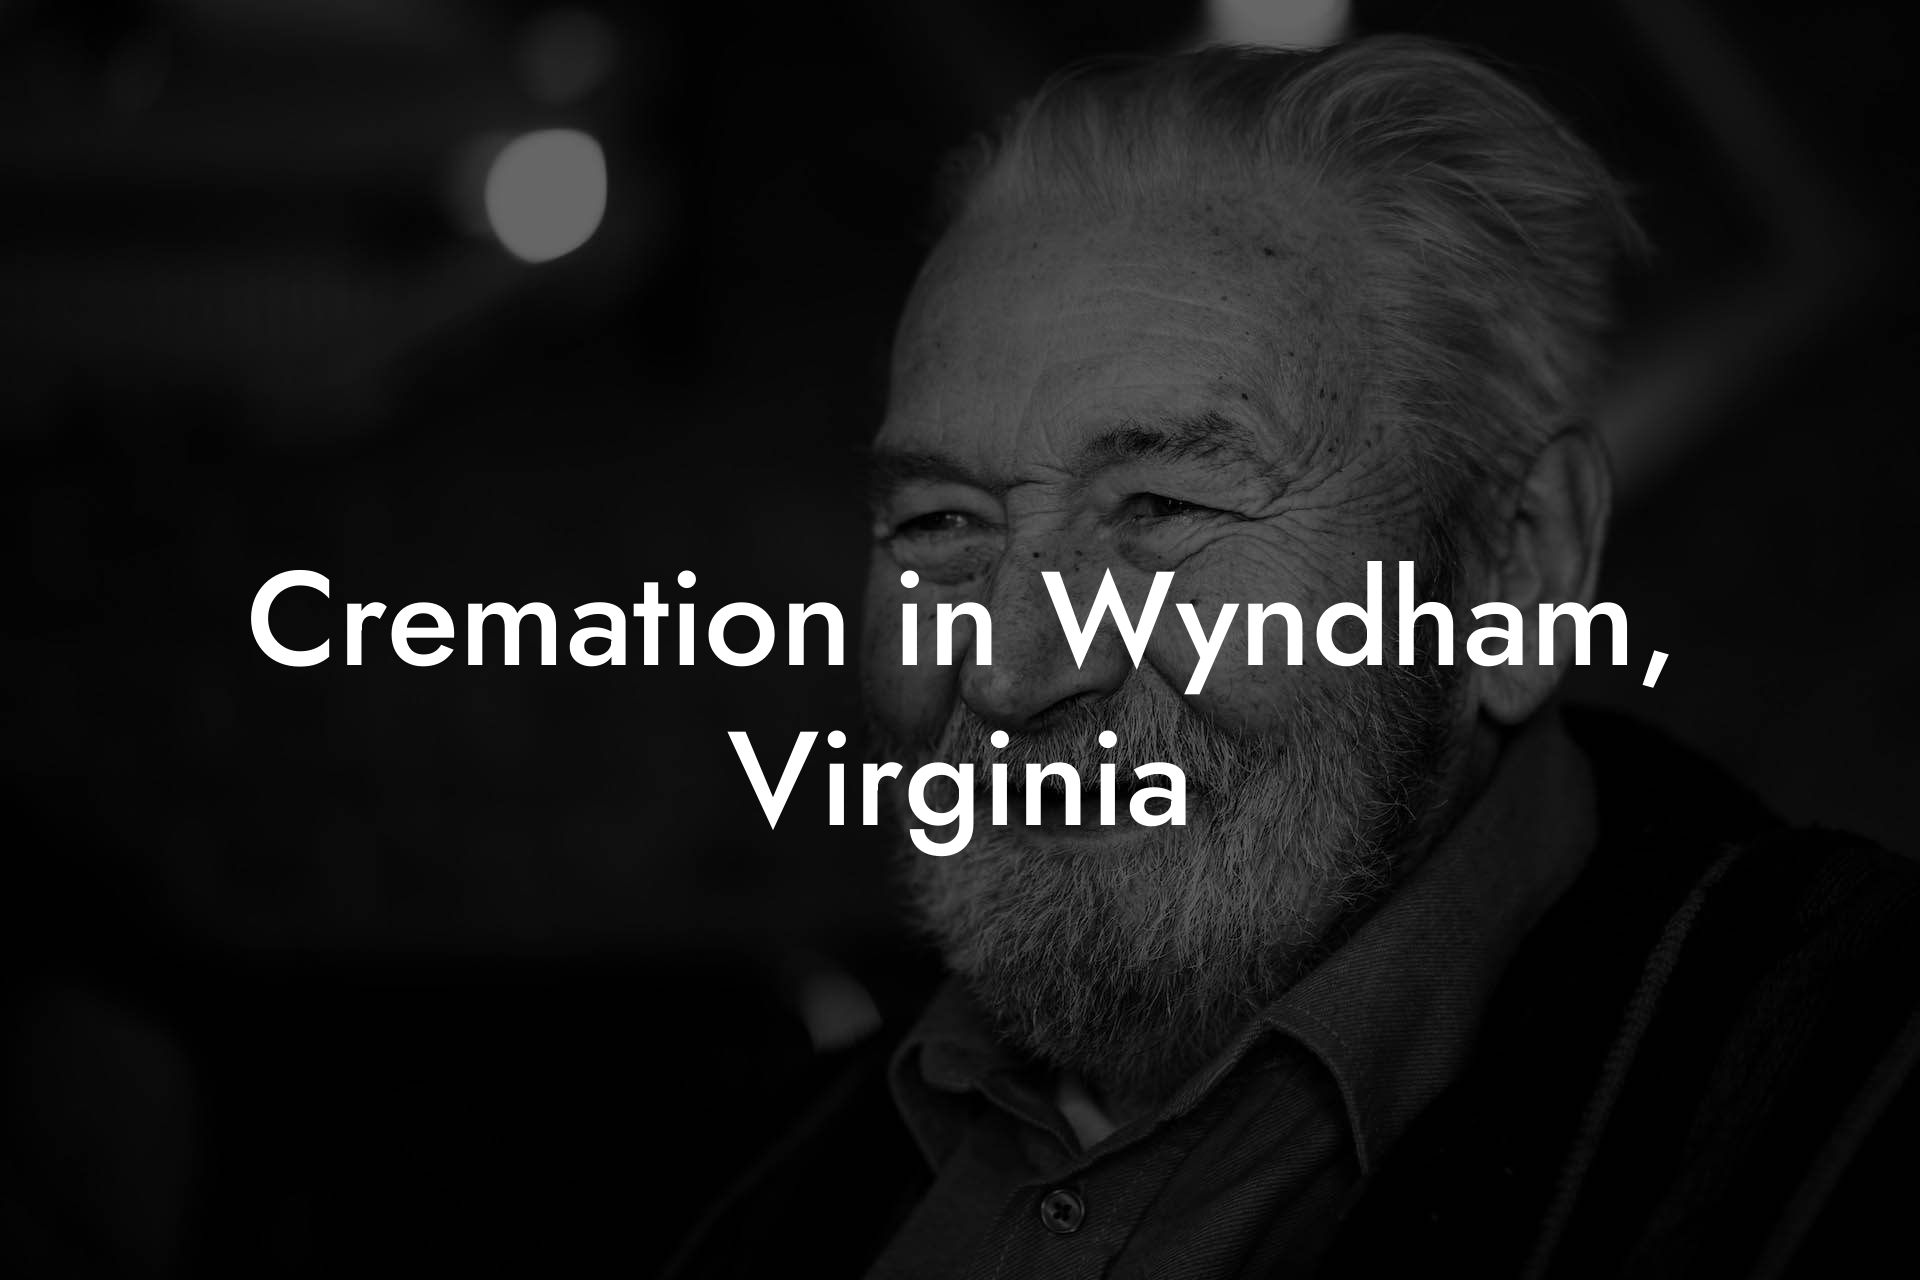 Cremation in Wyndham, Virginia